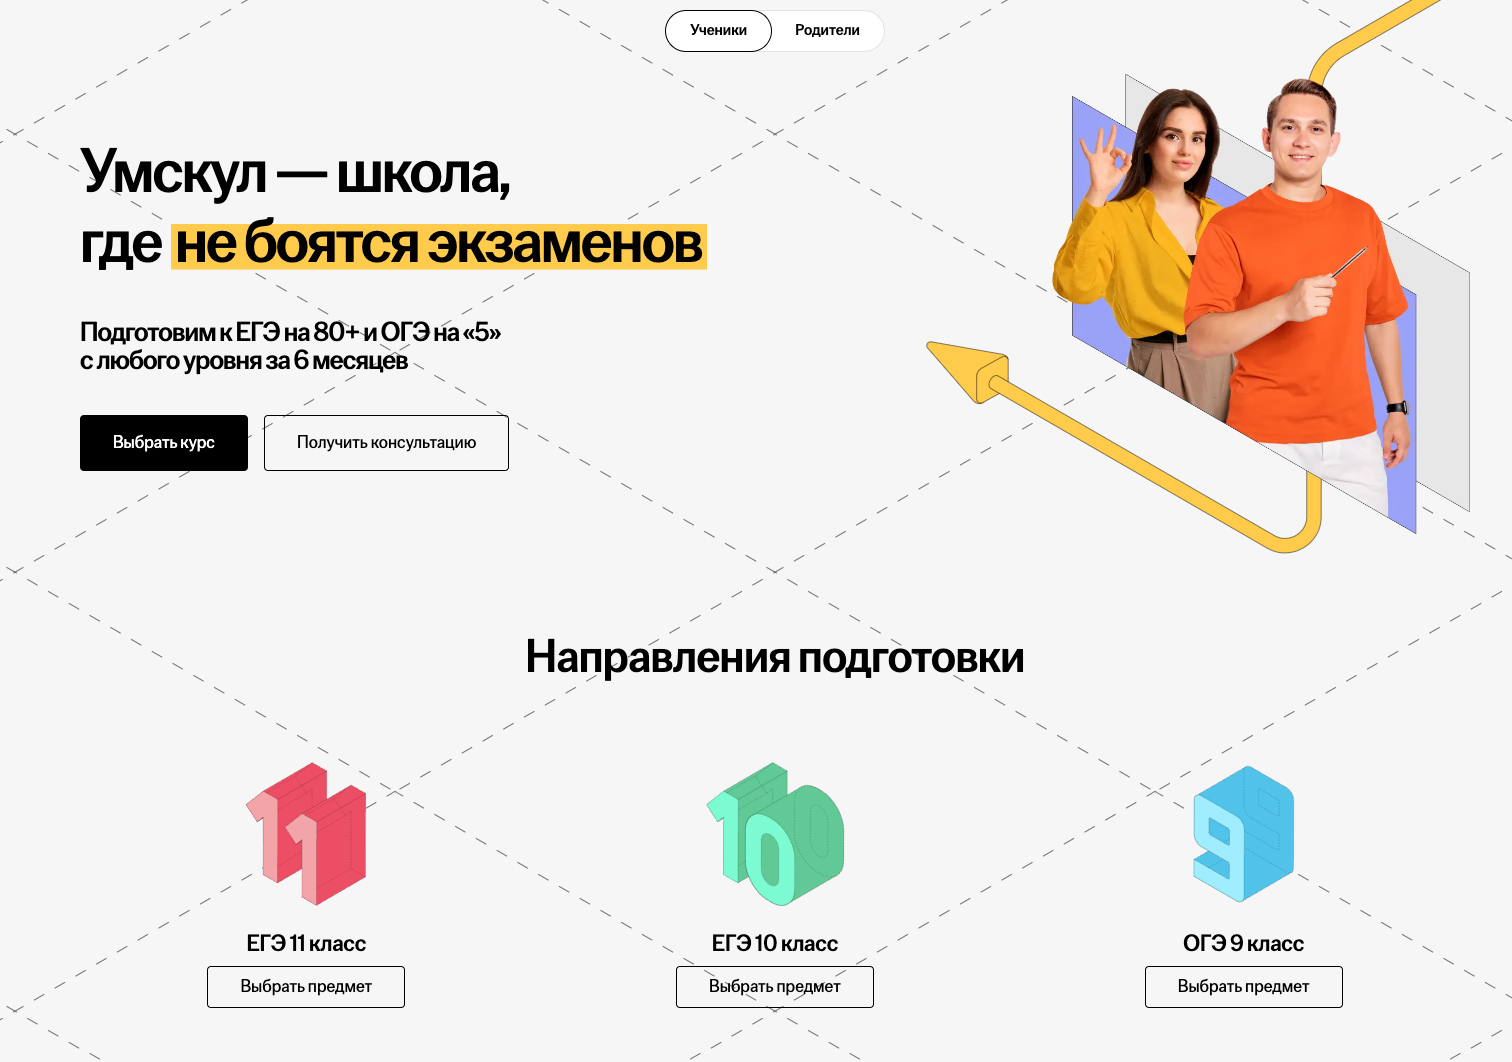 Онлайн-школа Умскуль впервые за 7 лет обновила сайт | Новости компании